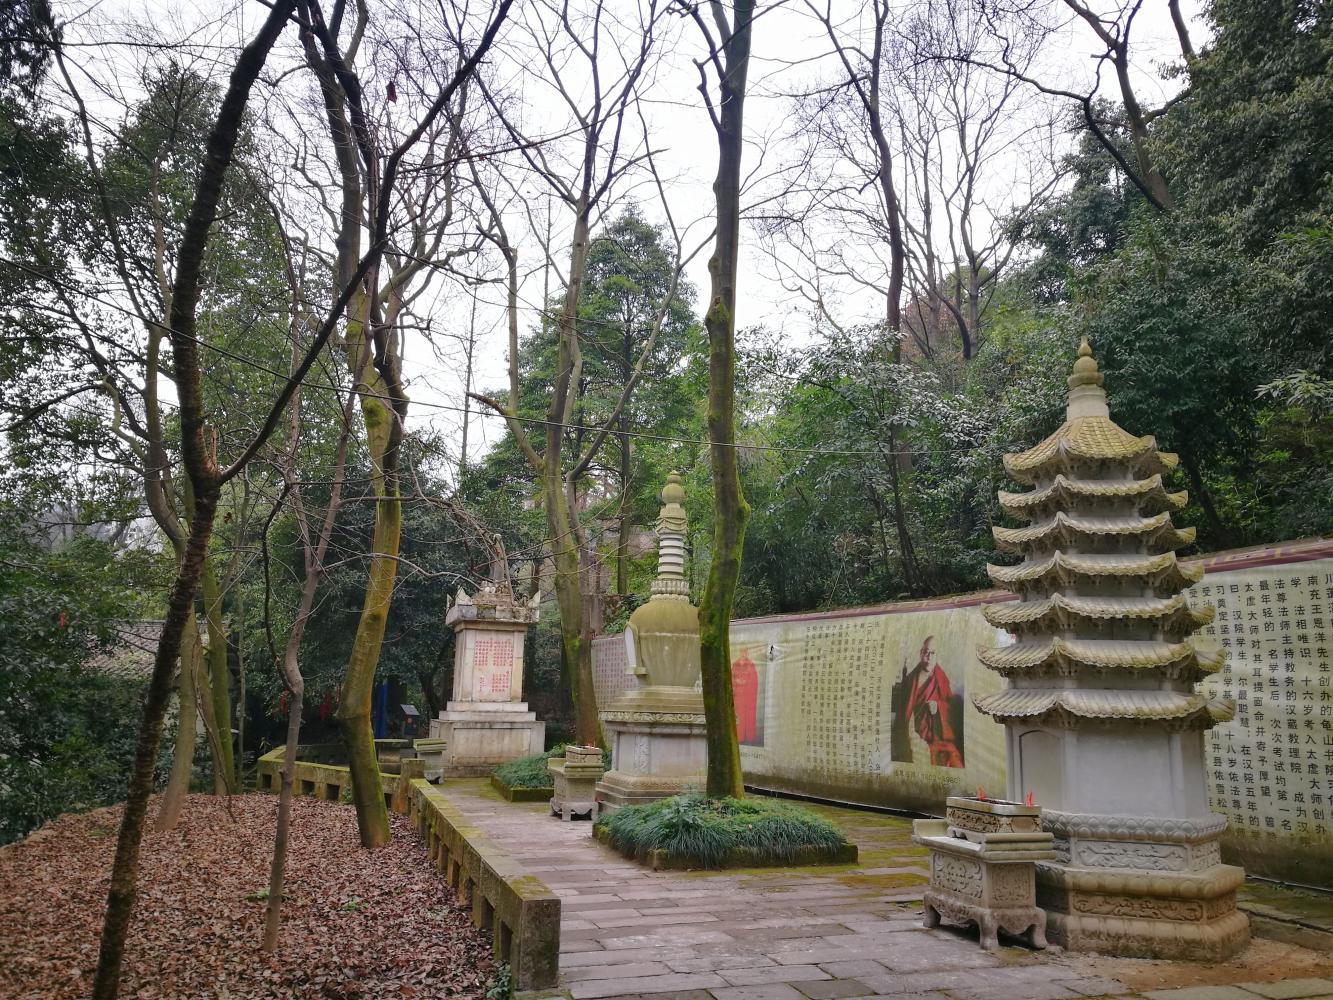 跟缙云寺有关的一些大师的纪念塔,比如太虚法师.